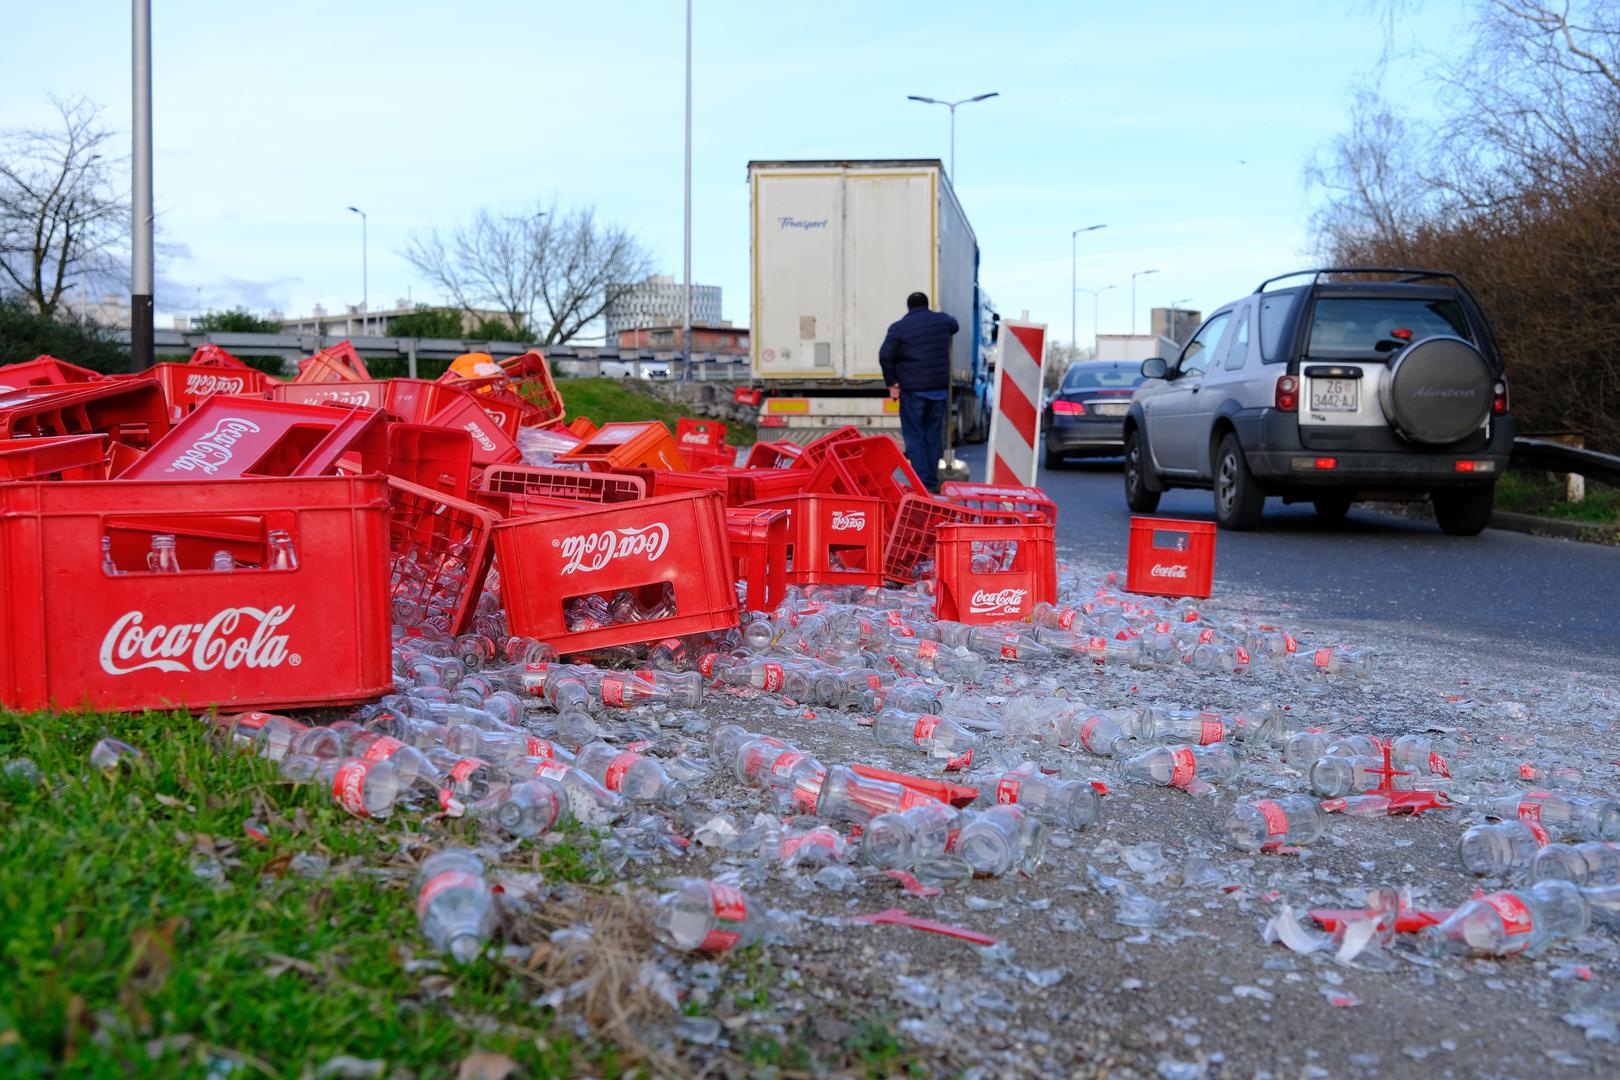 Nesvakidašnji prizor zabilježen je danas na križanju Držićeve i Slavonske u Zagrebu. Iz kamiona su izletjele gajbe s gaziranim pićem Coca-Cola te su se stotine staklenih bočica razletjele po cesti.